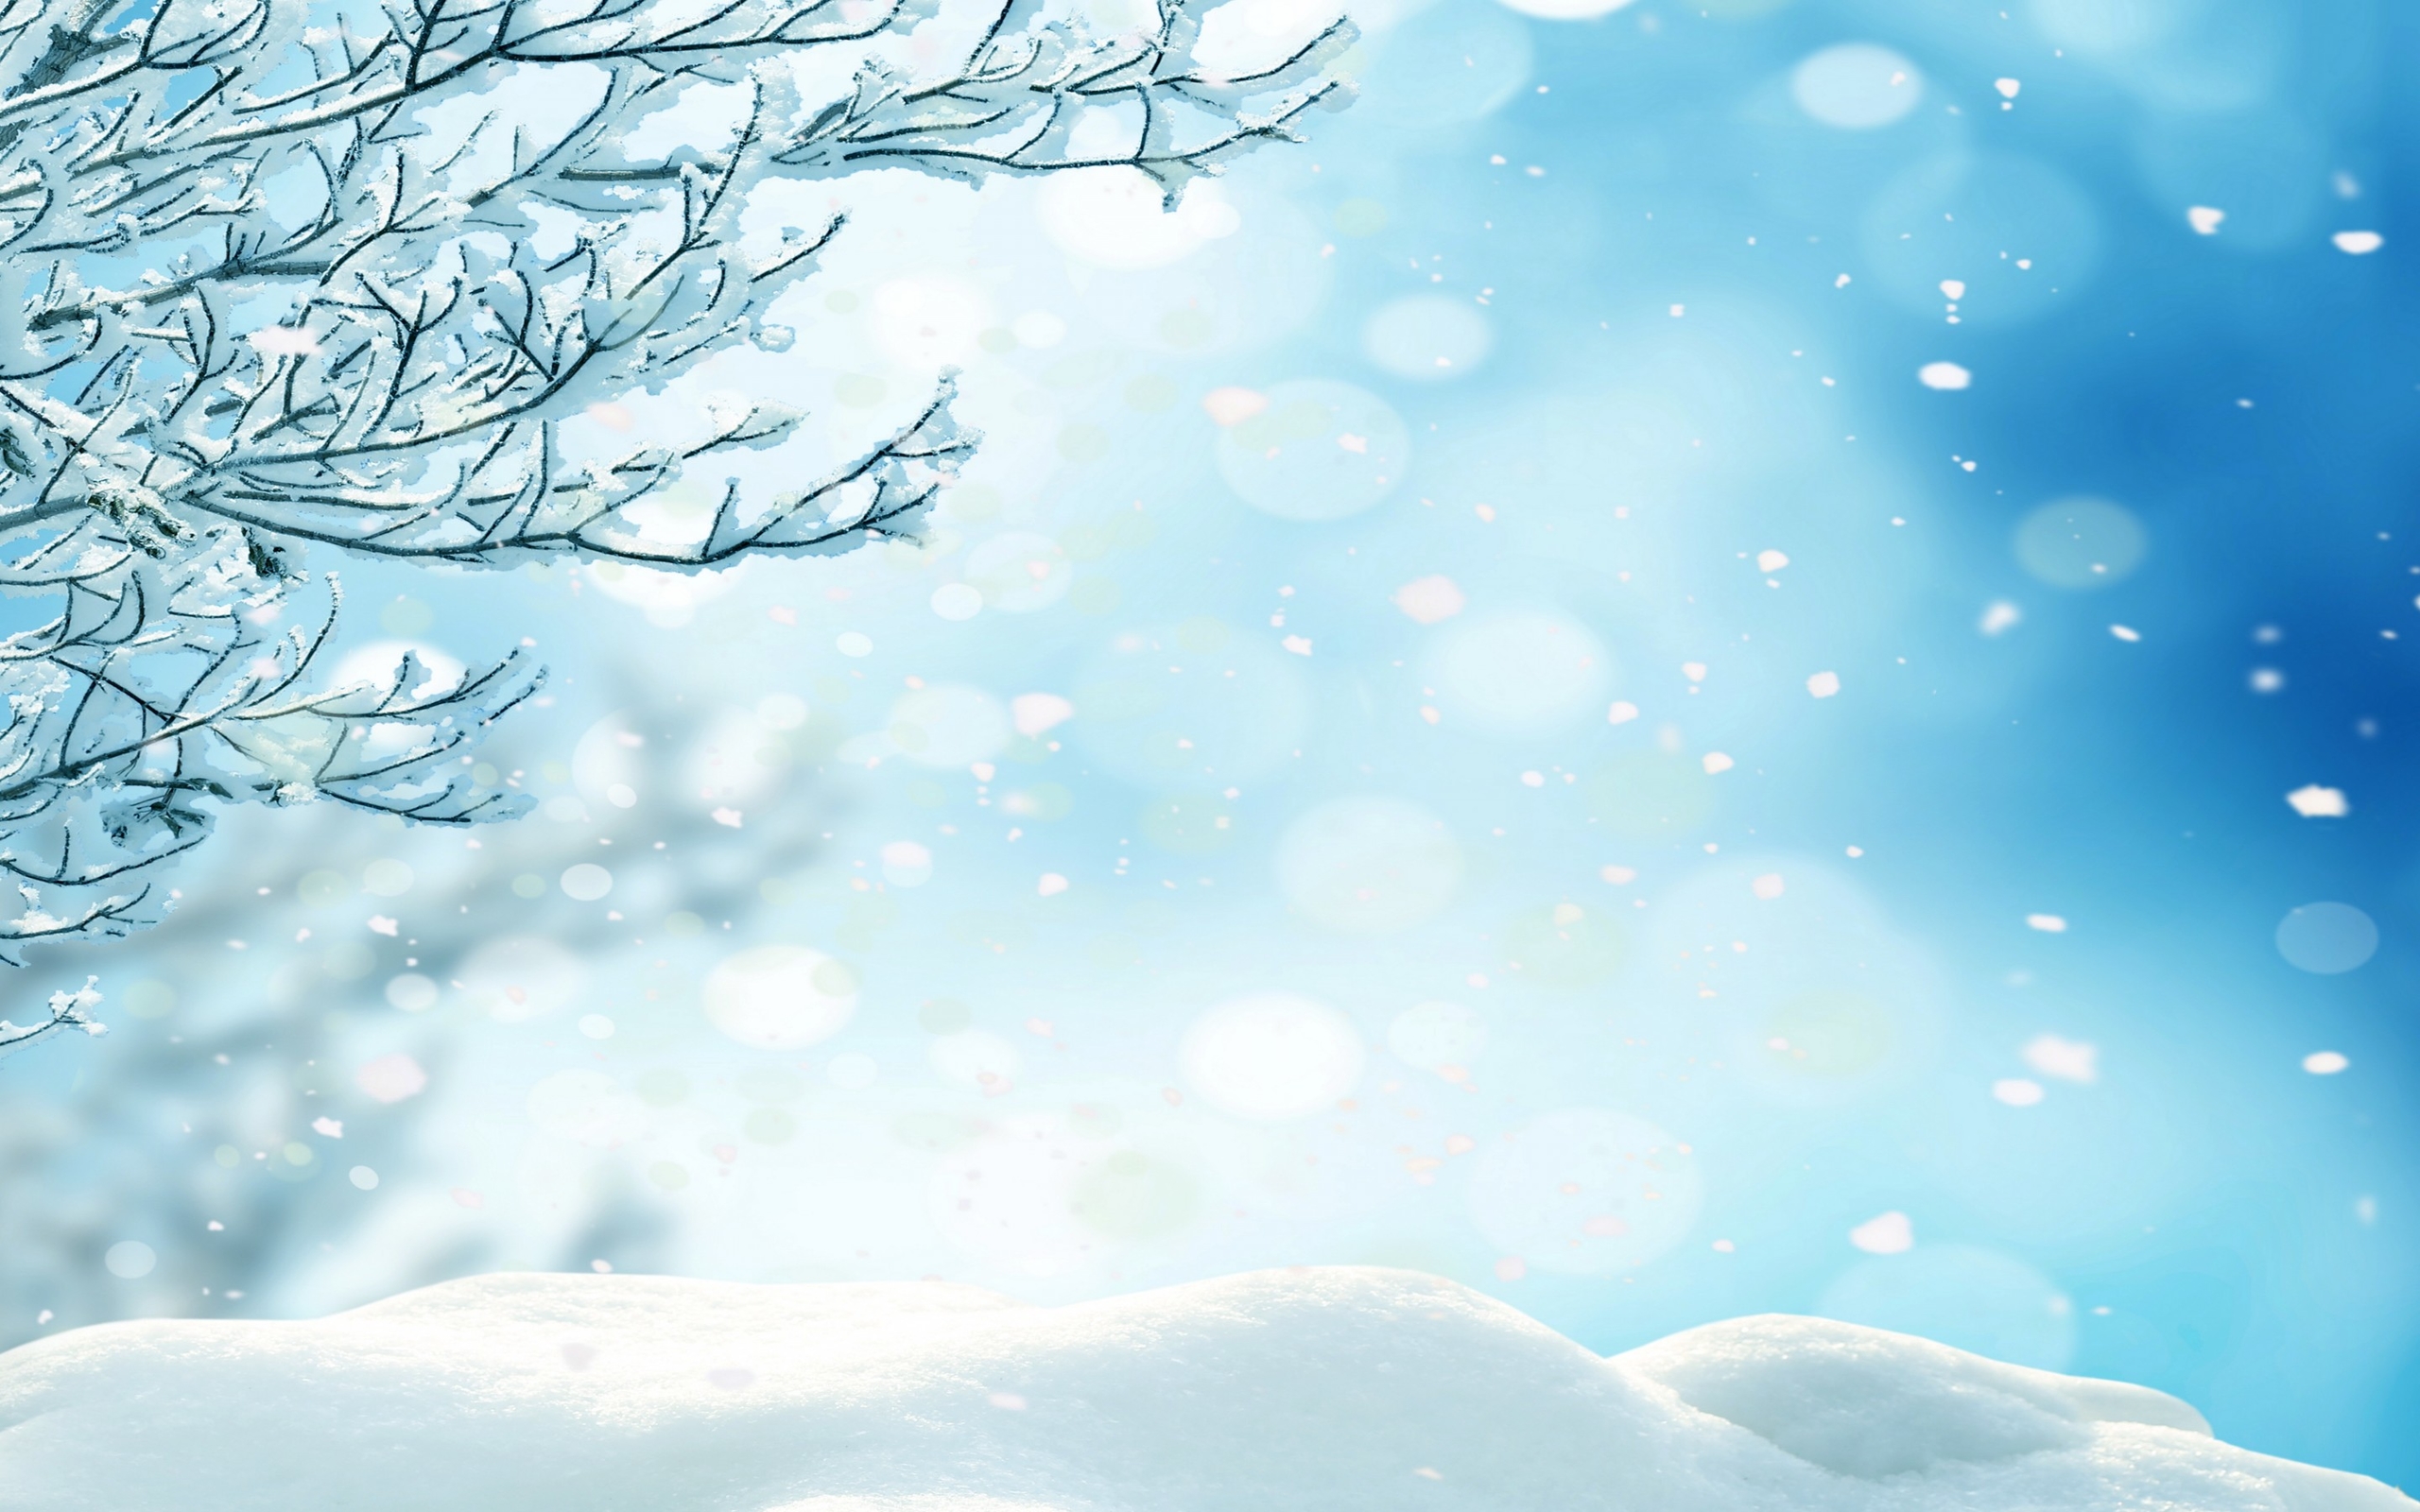 高清晰唯美冬季雪景自然景色壁纸下载 欧莱凯设计网 08php Com